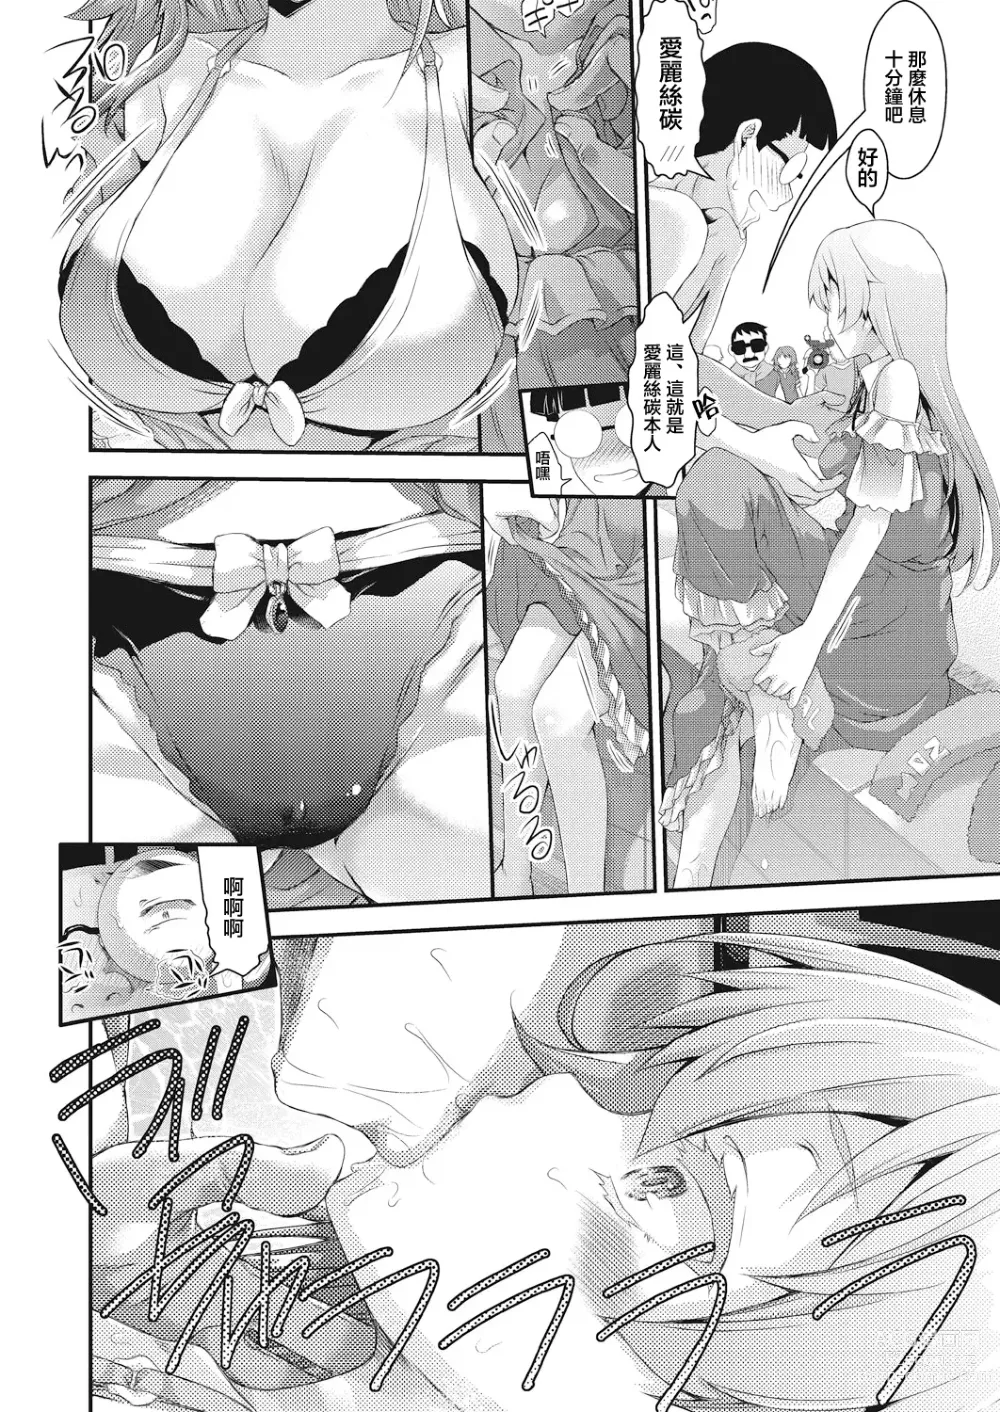 Page 14 of manga BOCCHI NO ZAMMA 3